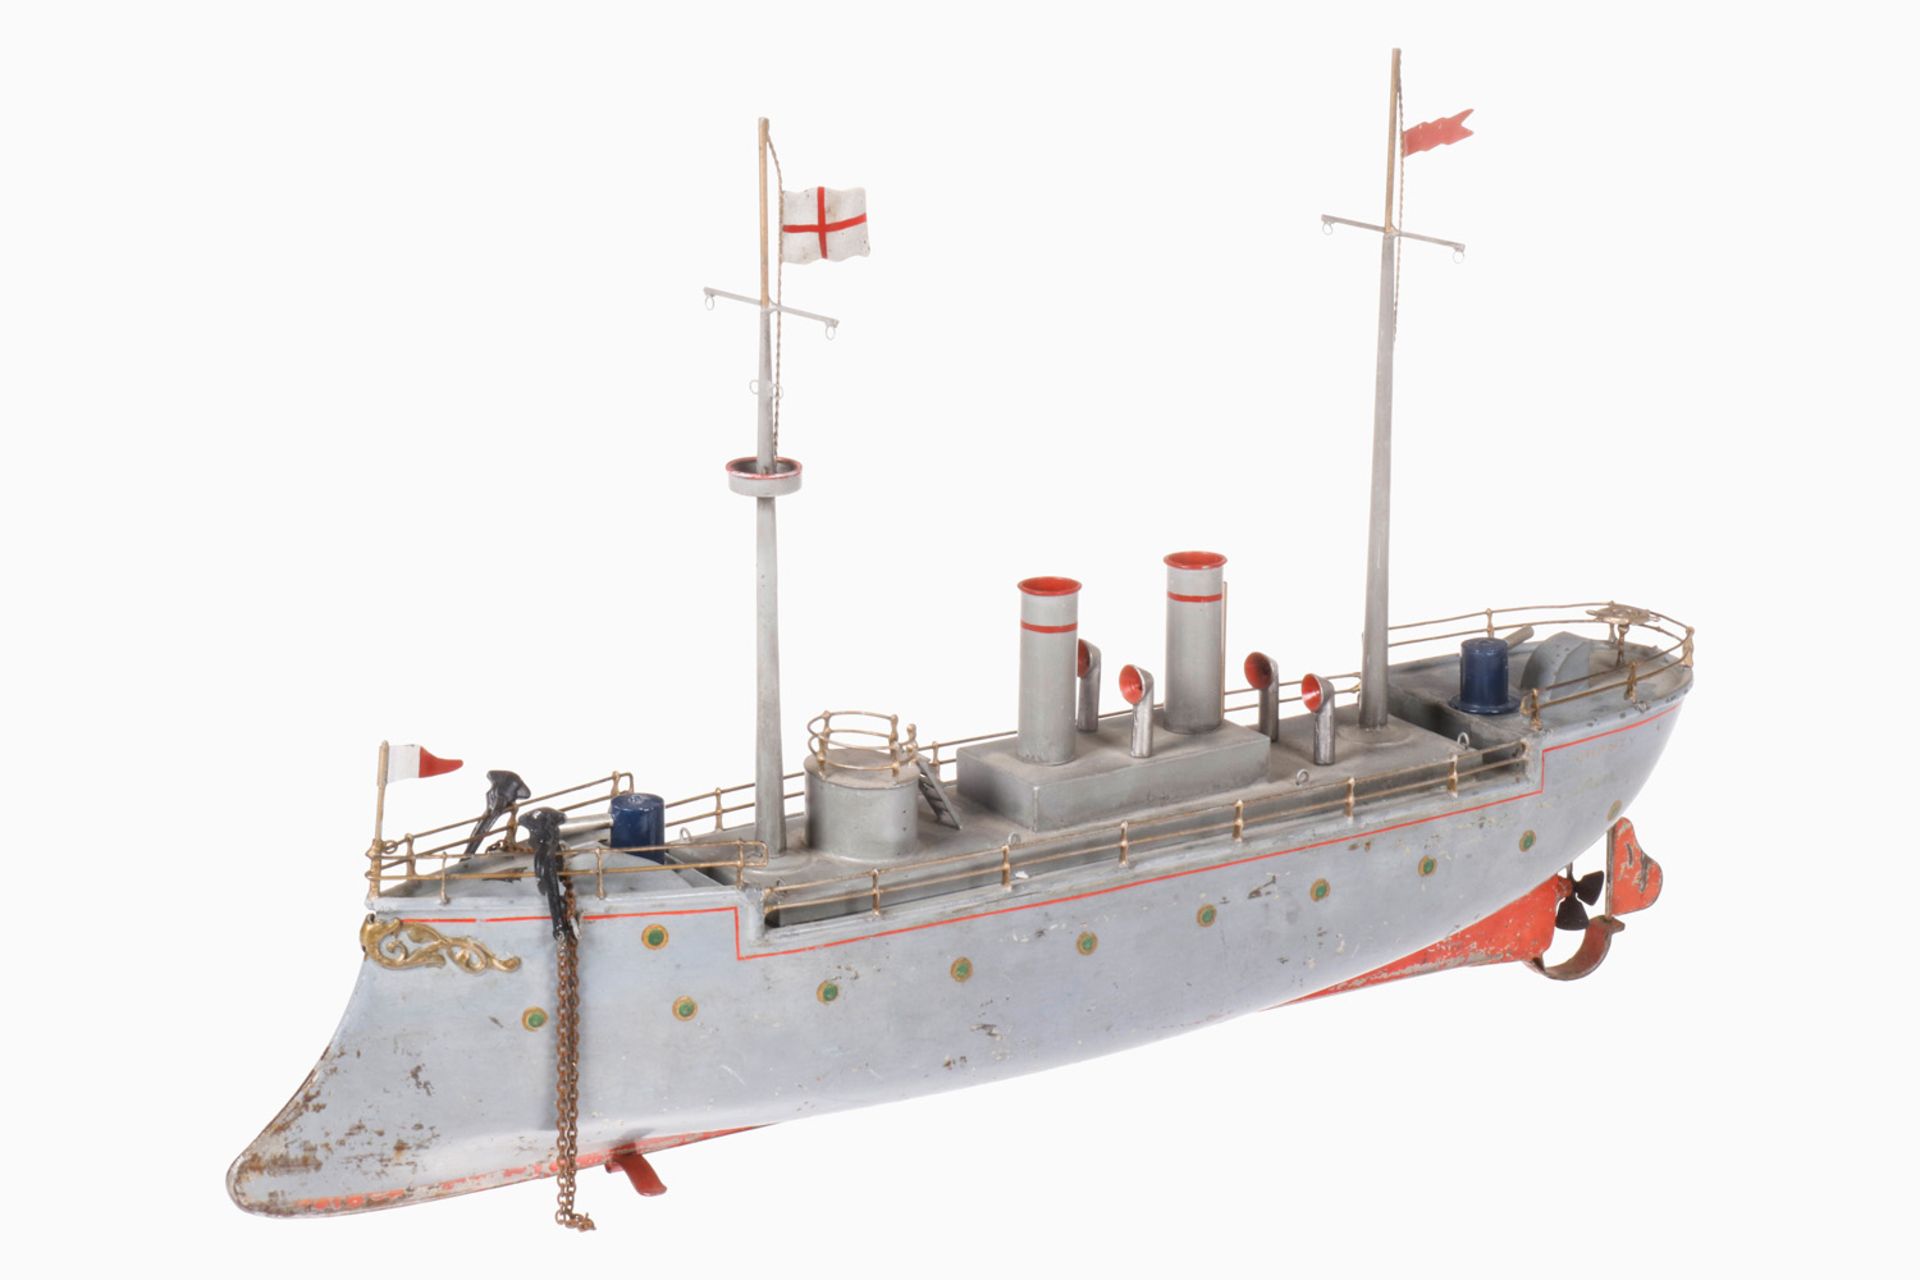 Bing Kanonenboot "Chanzy", uralt, HL, Uhrwerk intakt, mit Geschütztürmen (ergänzt), Deck tw rest.,